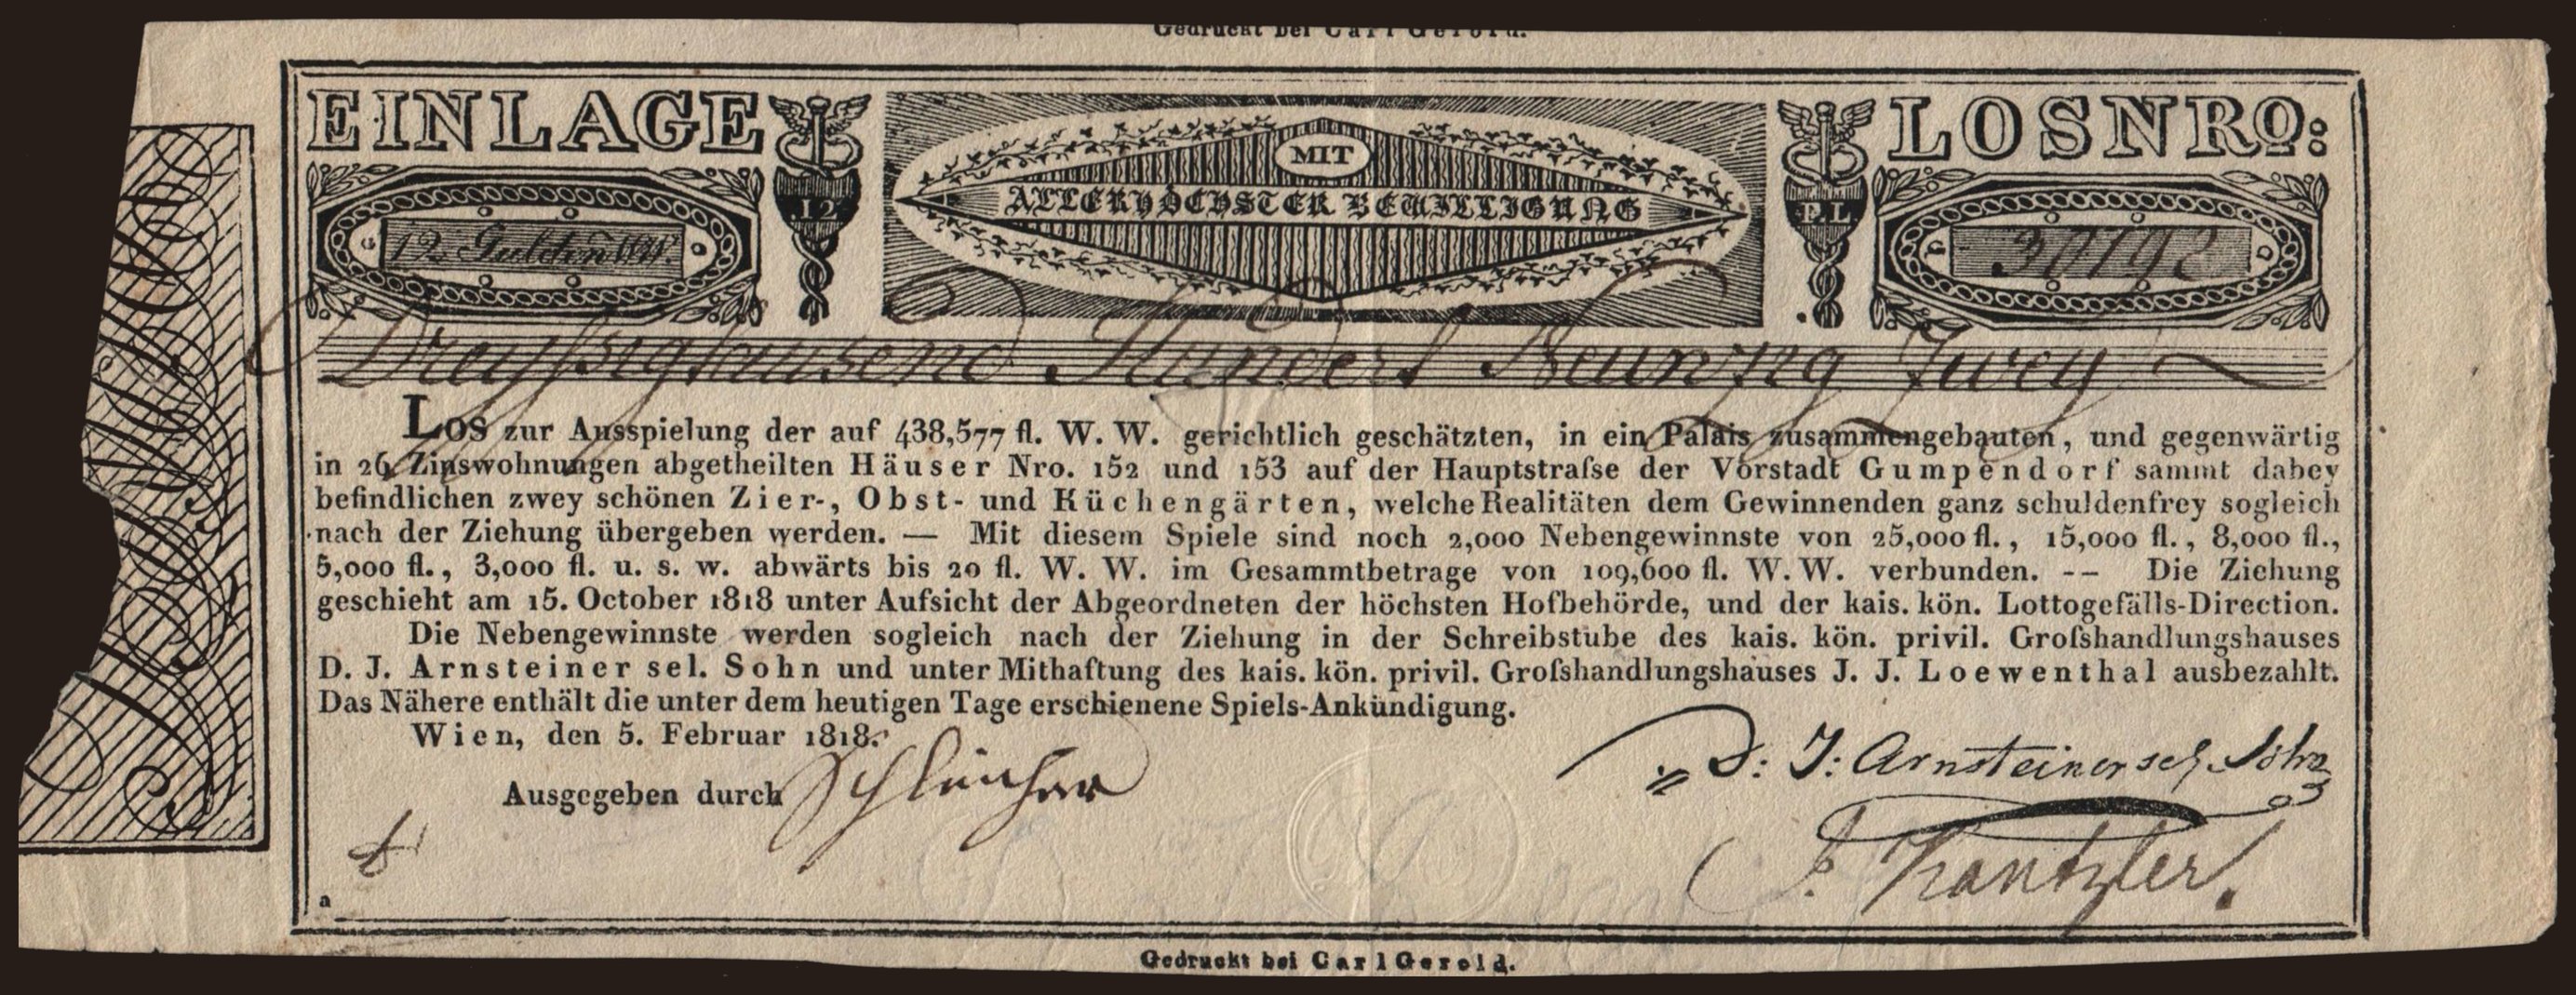 Los zur Ausspielung, 12 Gulden, 1818